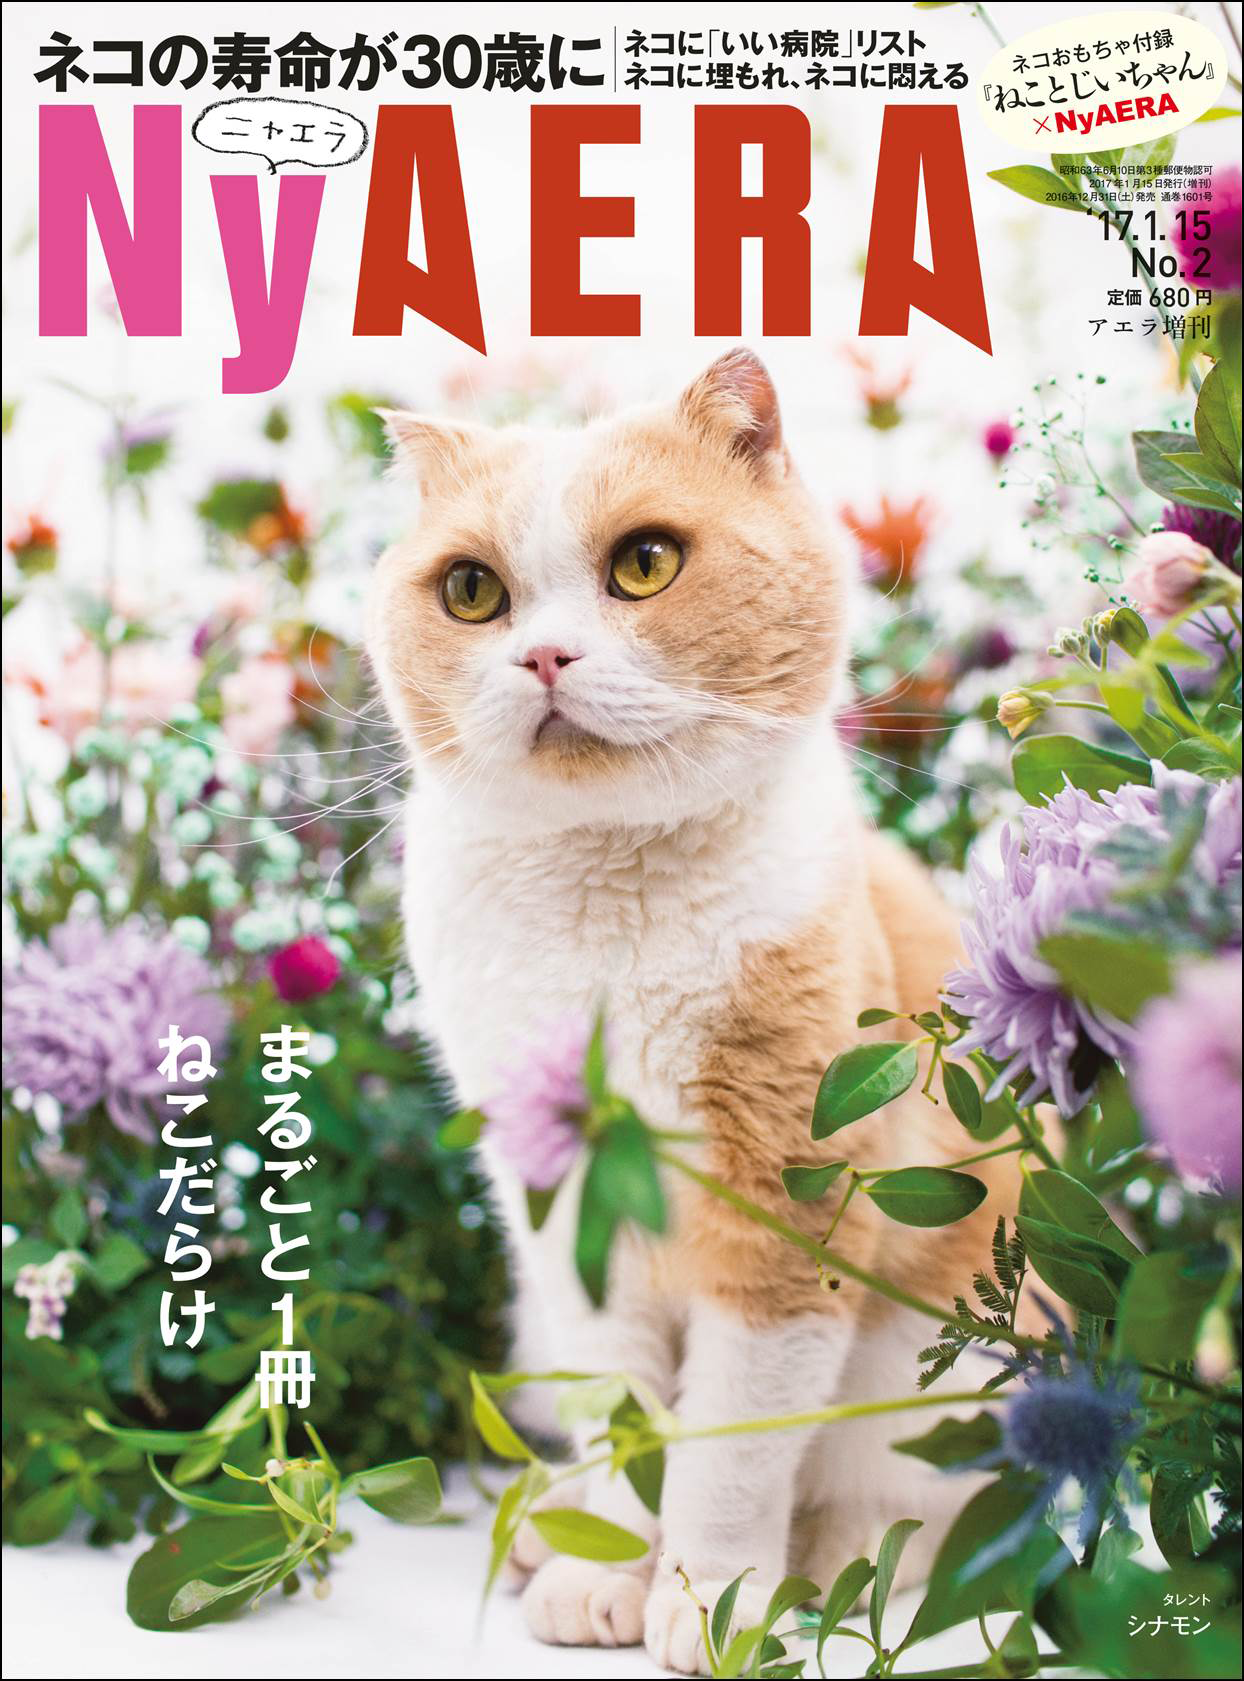 臨時増刊「NyAERA（ニャエラ）」の表紙。価格は680円